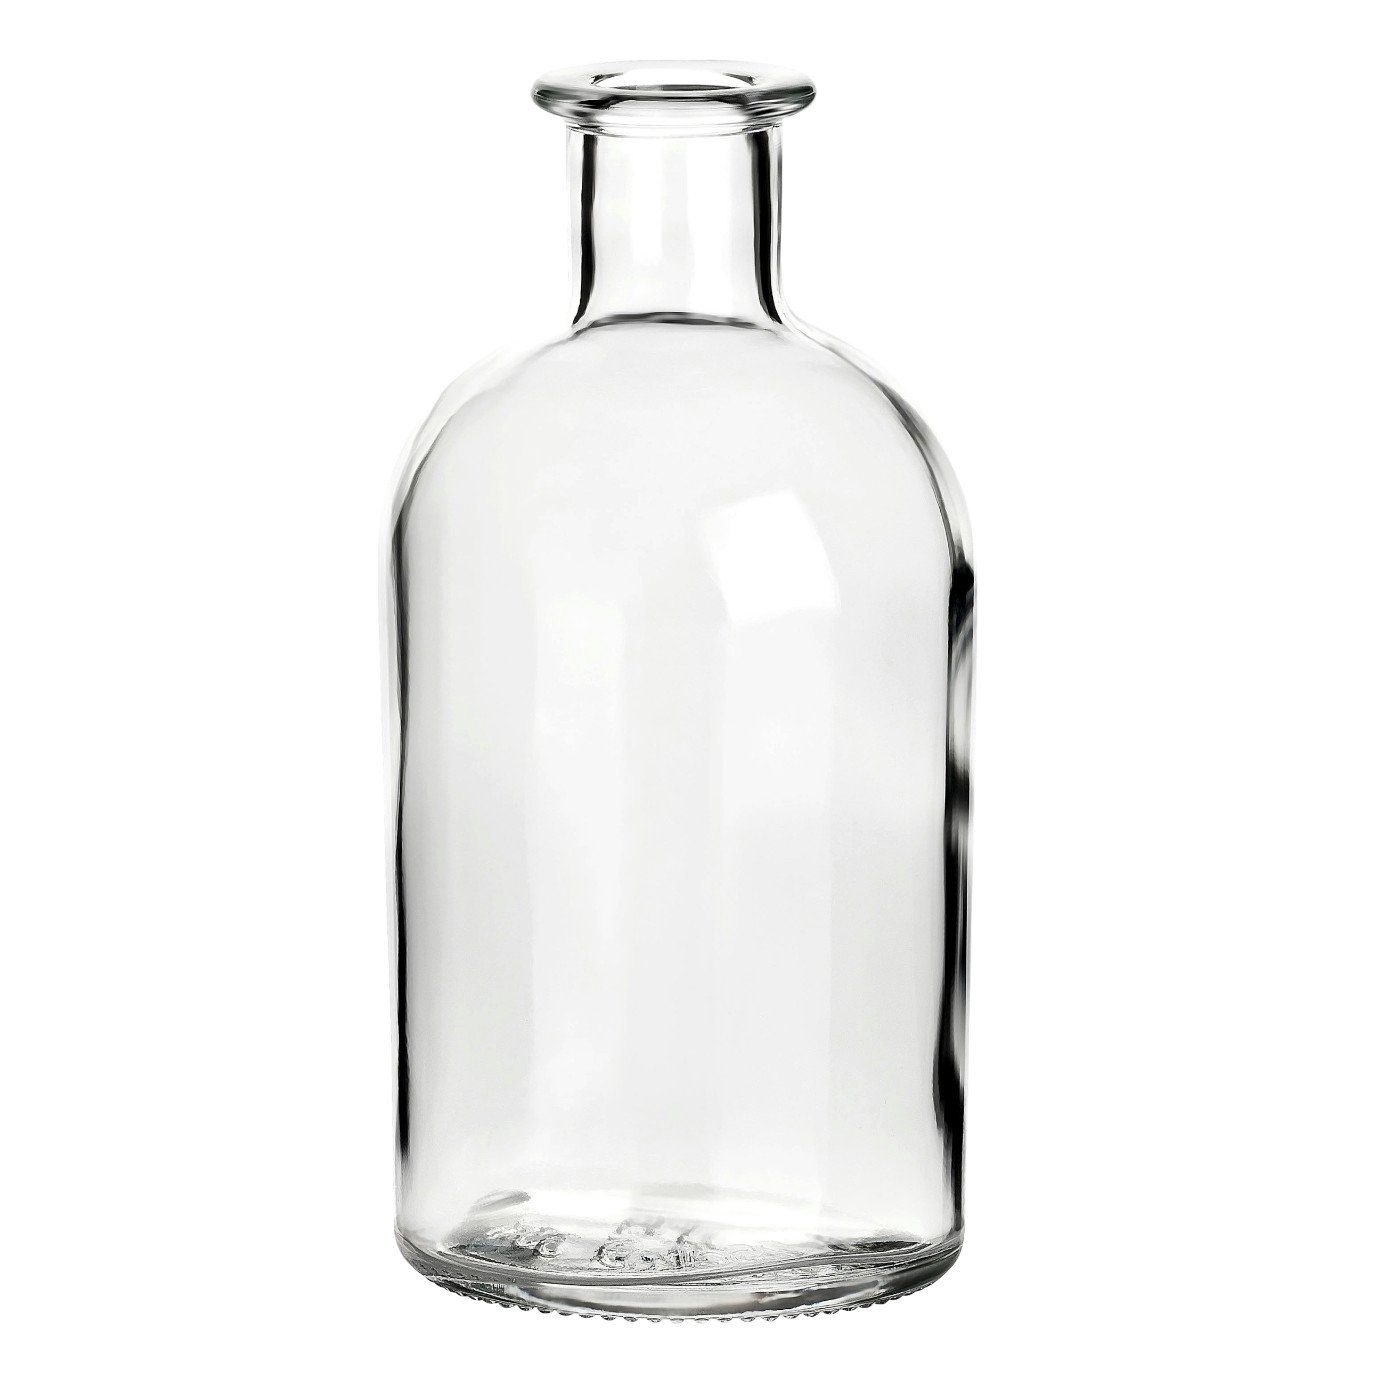 Korken Likörflasche Trinkflasche SK Apotheker ml - 250 0,25 l, mit Glasflaschen 12er Transparent, gouveo Leere Set,